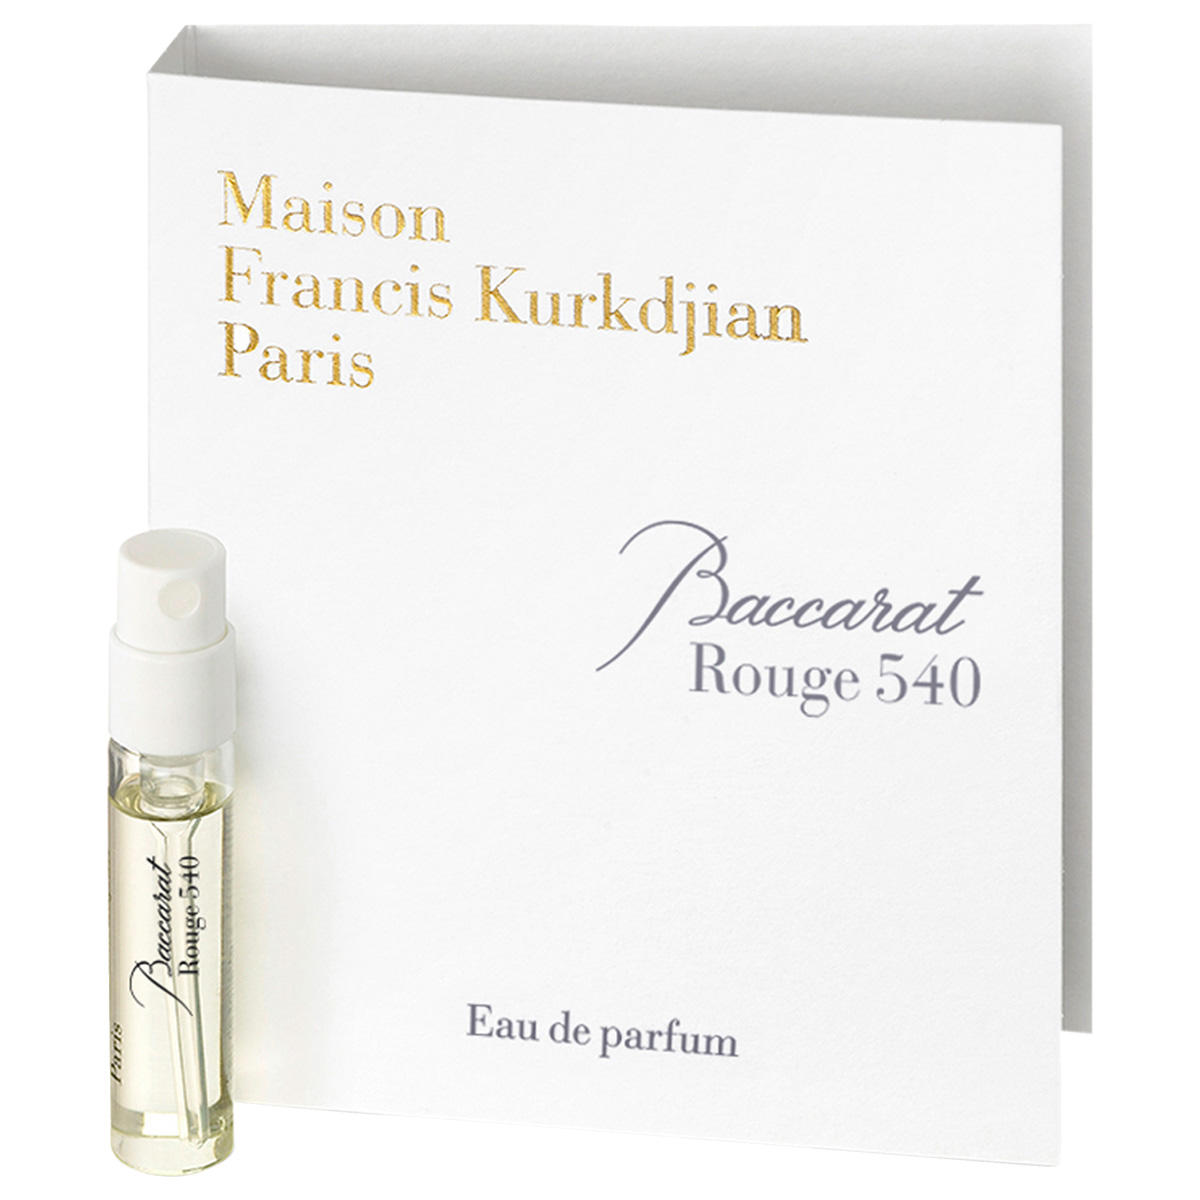 Maison Francis Kurkdjian Paris  Baccarat Rouge 540 Eau de Parfum 2 ml  - 1